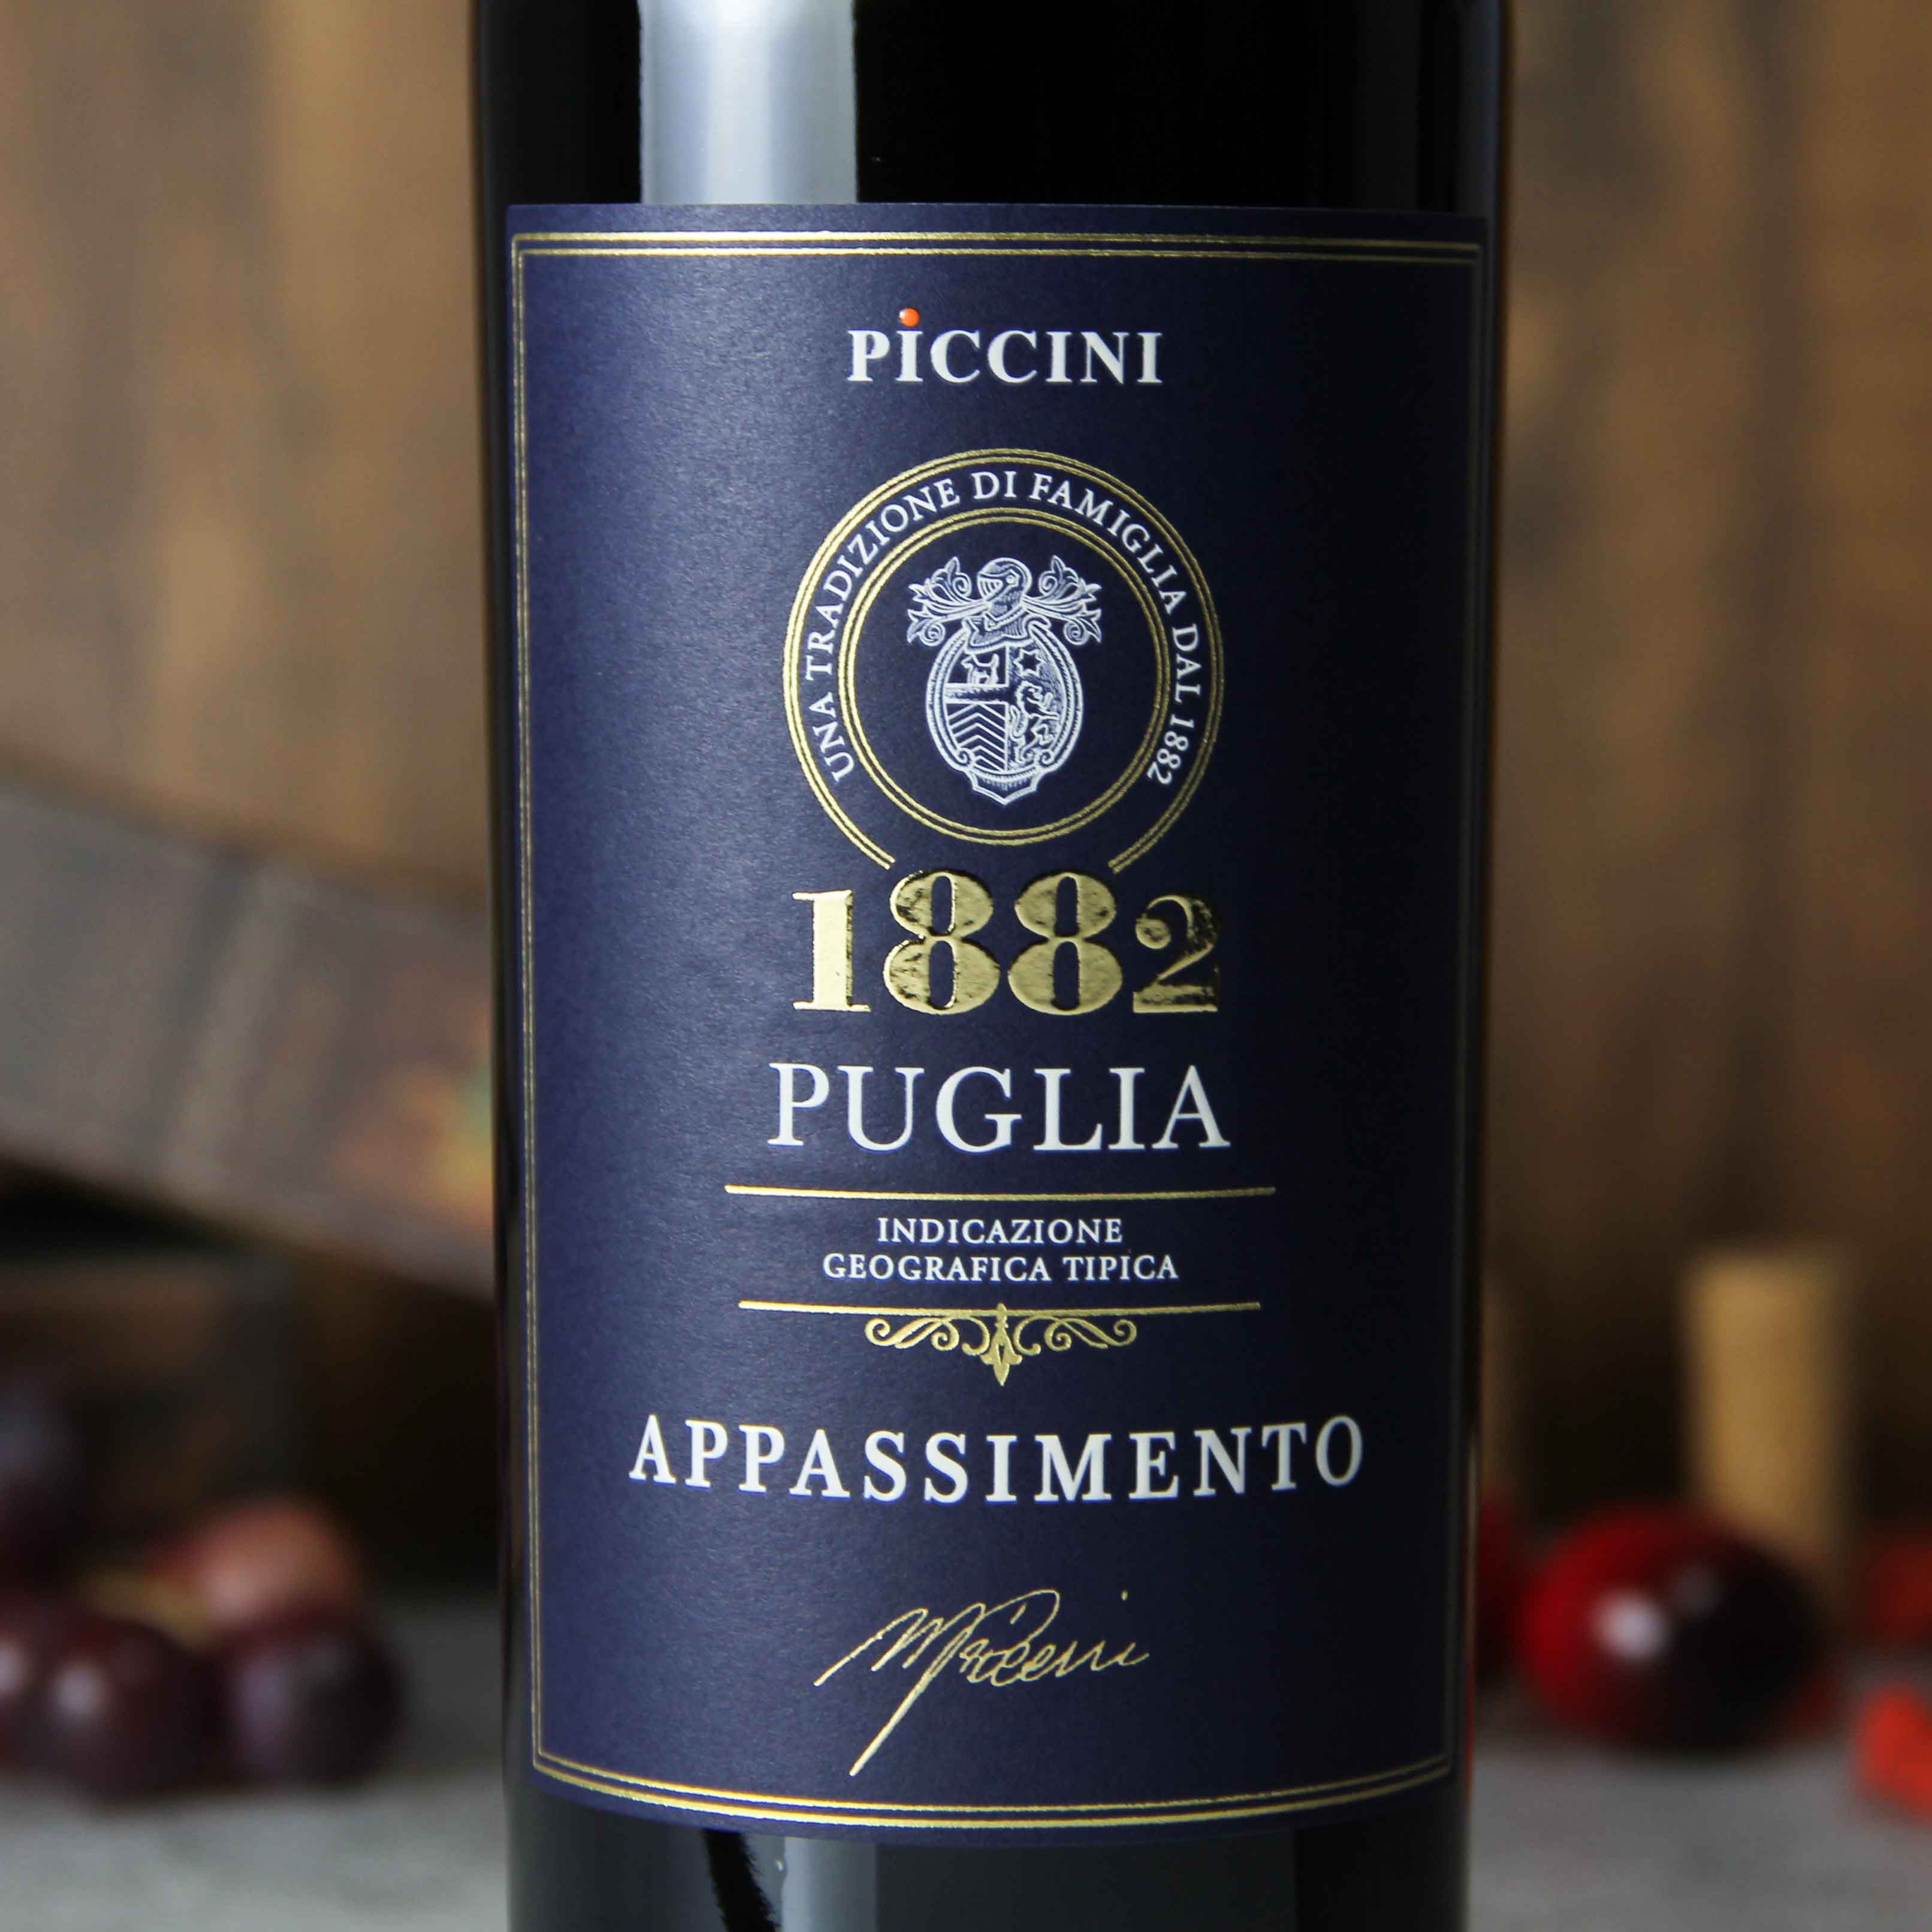 意大利彼奇尼1882枯藤普利亚红葡萄酒红酒